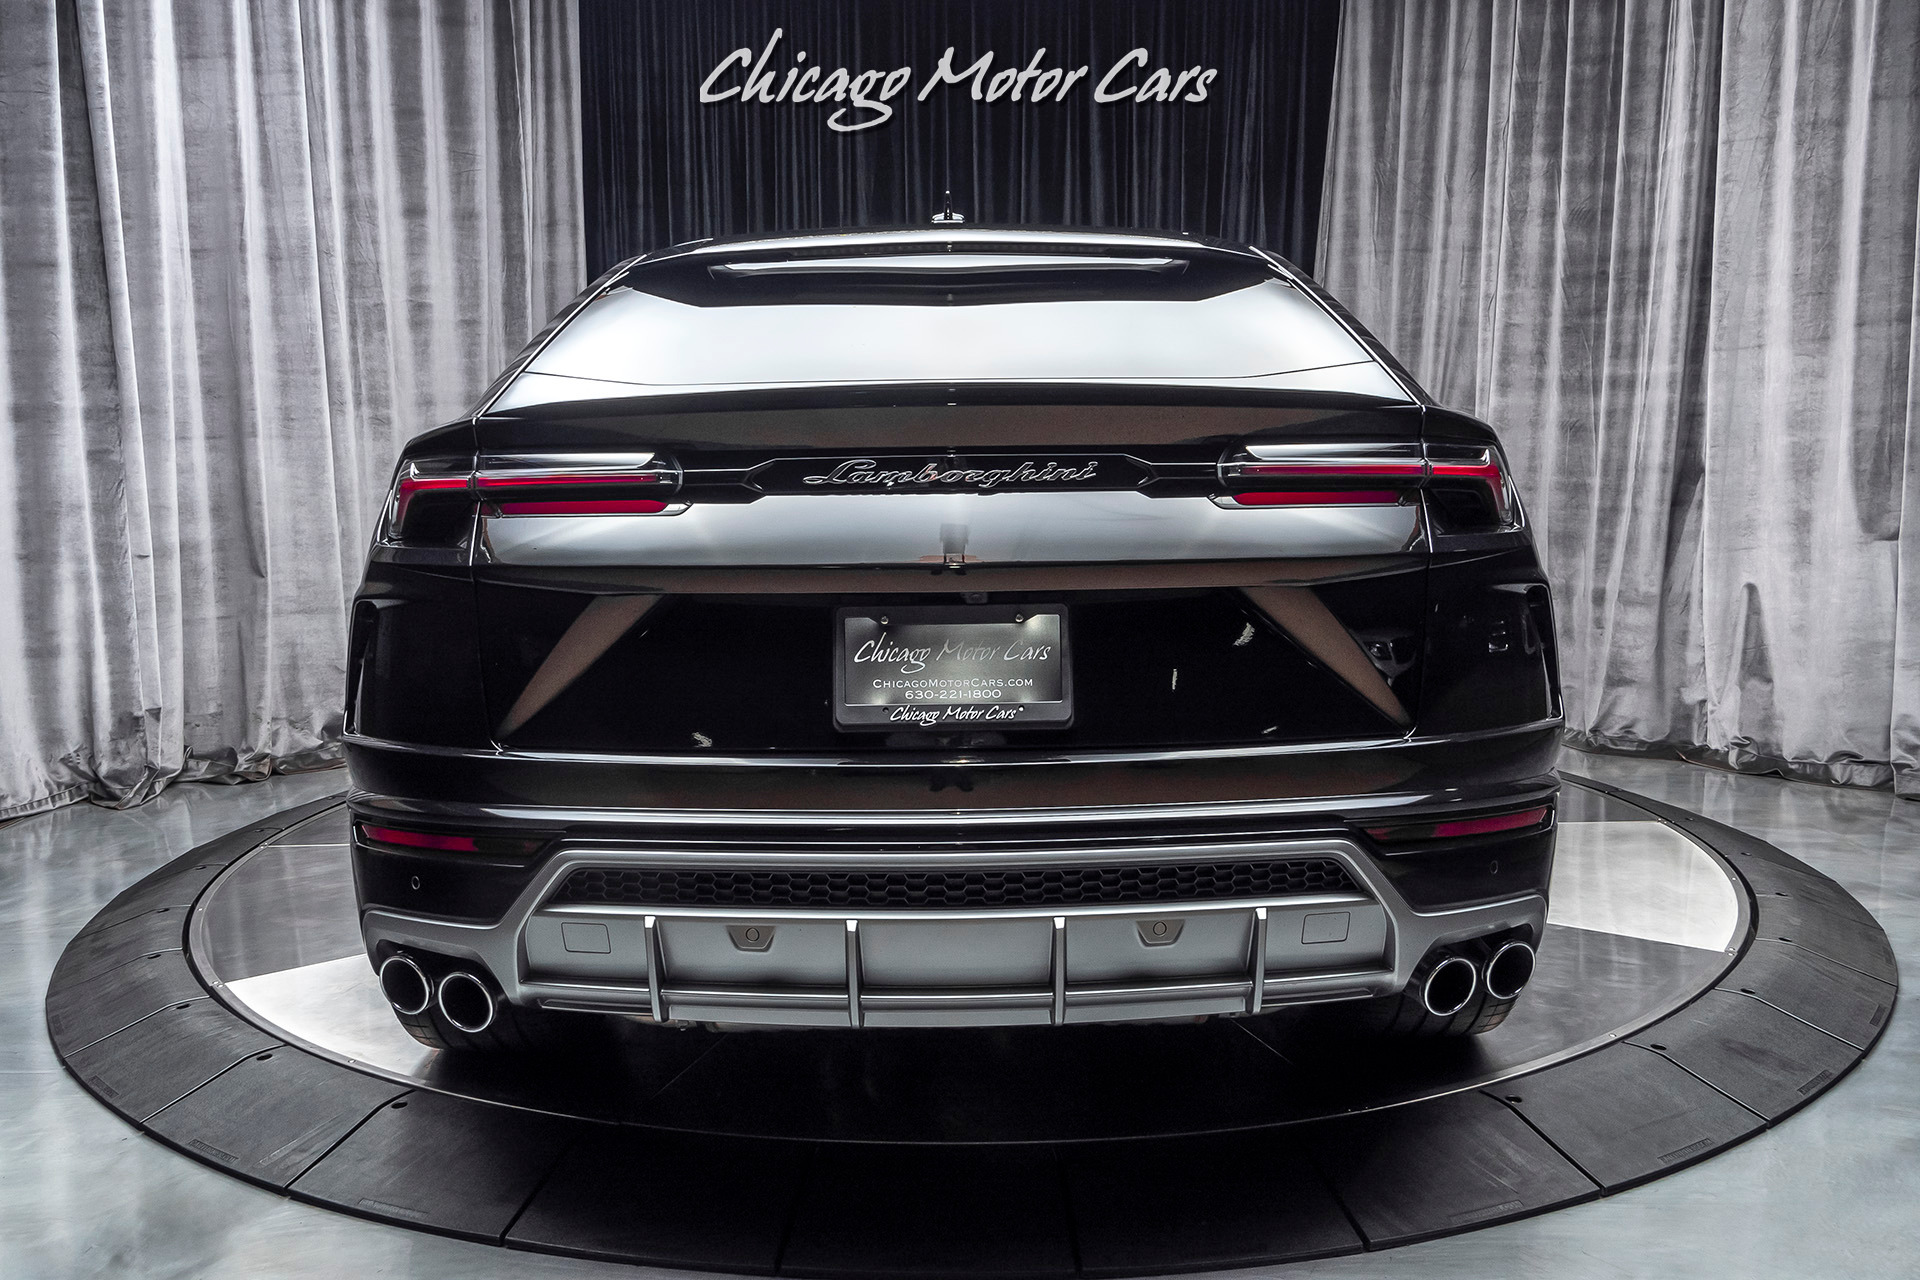 For sale : 2020 Lamborghini Urus - Chicago Motor Cars ...